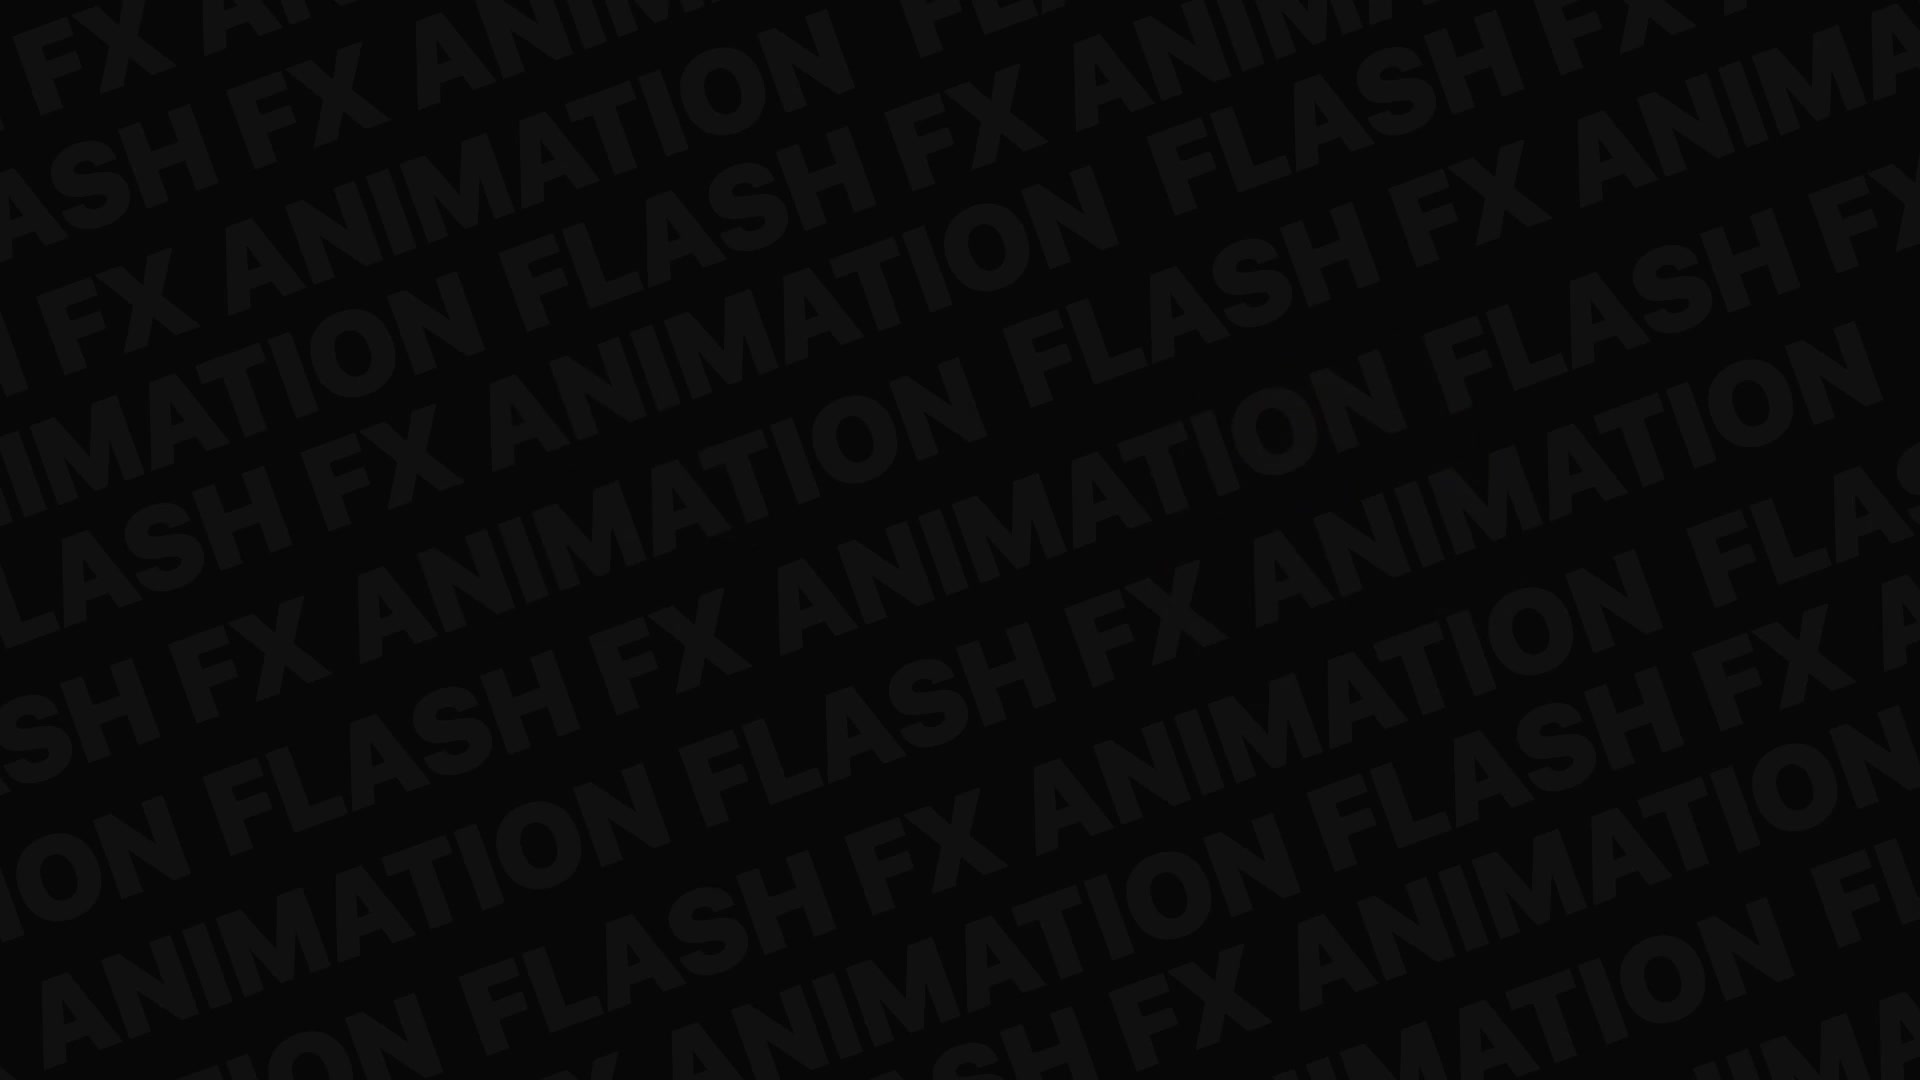 Flash FX Elements Pack | Premiere Pro MOGRT Videohive 32640445 Premiere Pro Image 9